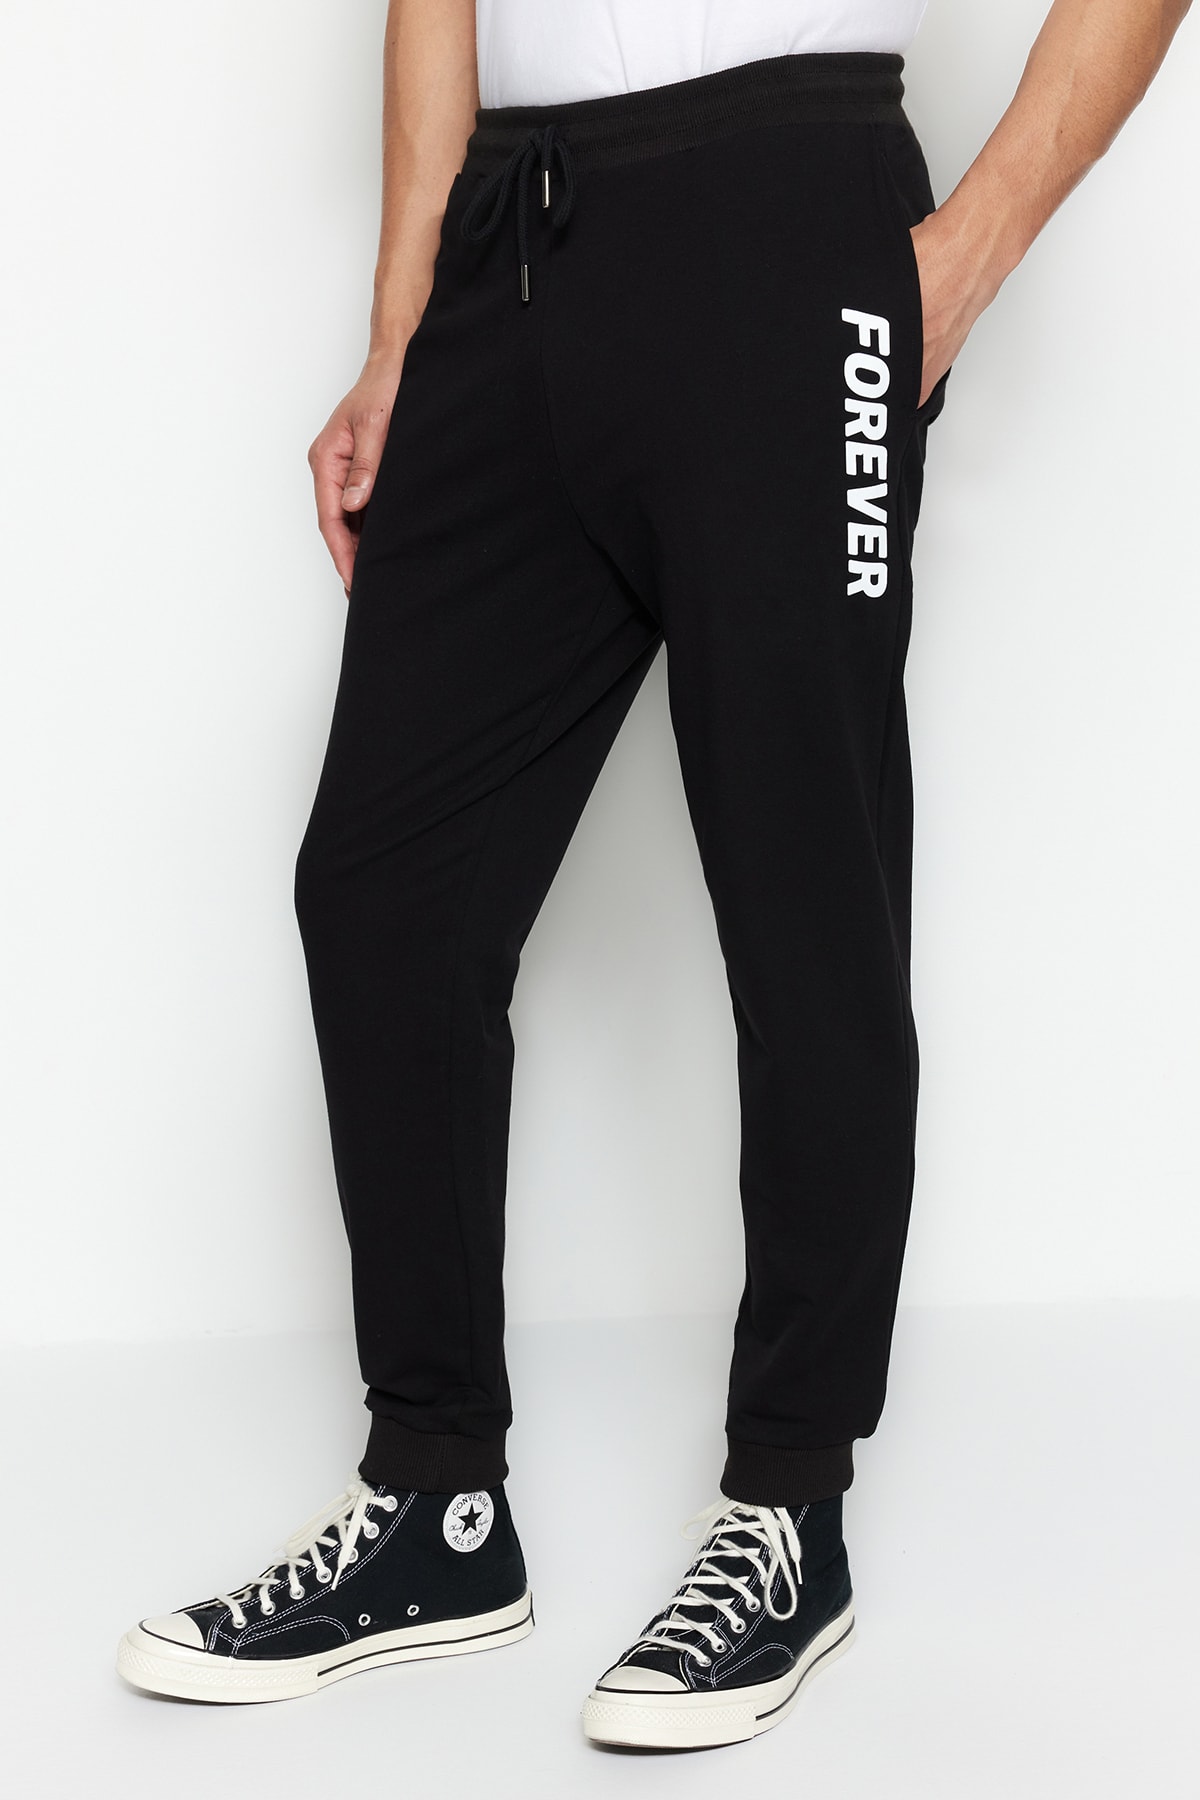 Trendyol Men's Black Regular/Regular Cut, Printed Sweatpants With Rubber Legs